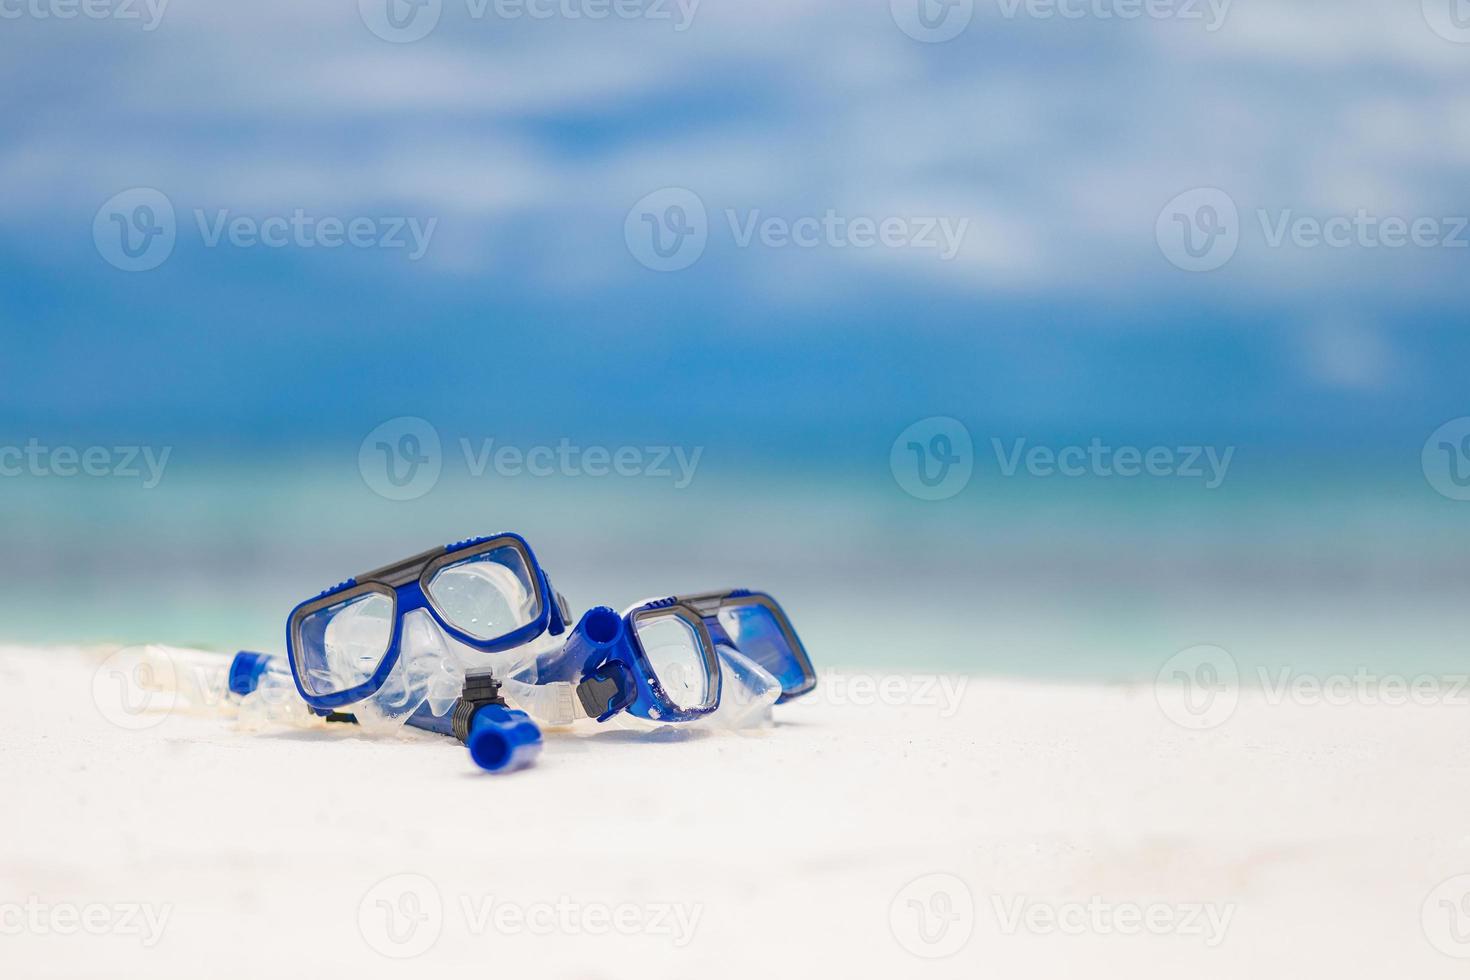 Taucherbrille und Schnorchelausrüstung am Sandstrand. schnorcheln wassersport- und freizeitausrüstung, exotische strandlandschaften, sommerferien und tourismuskonzept foto